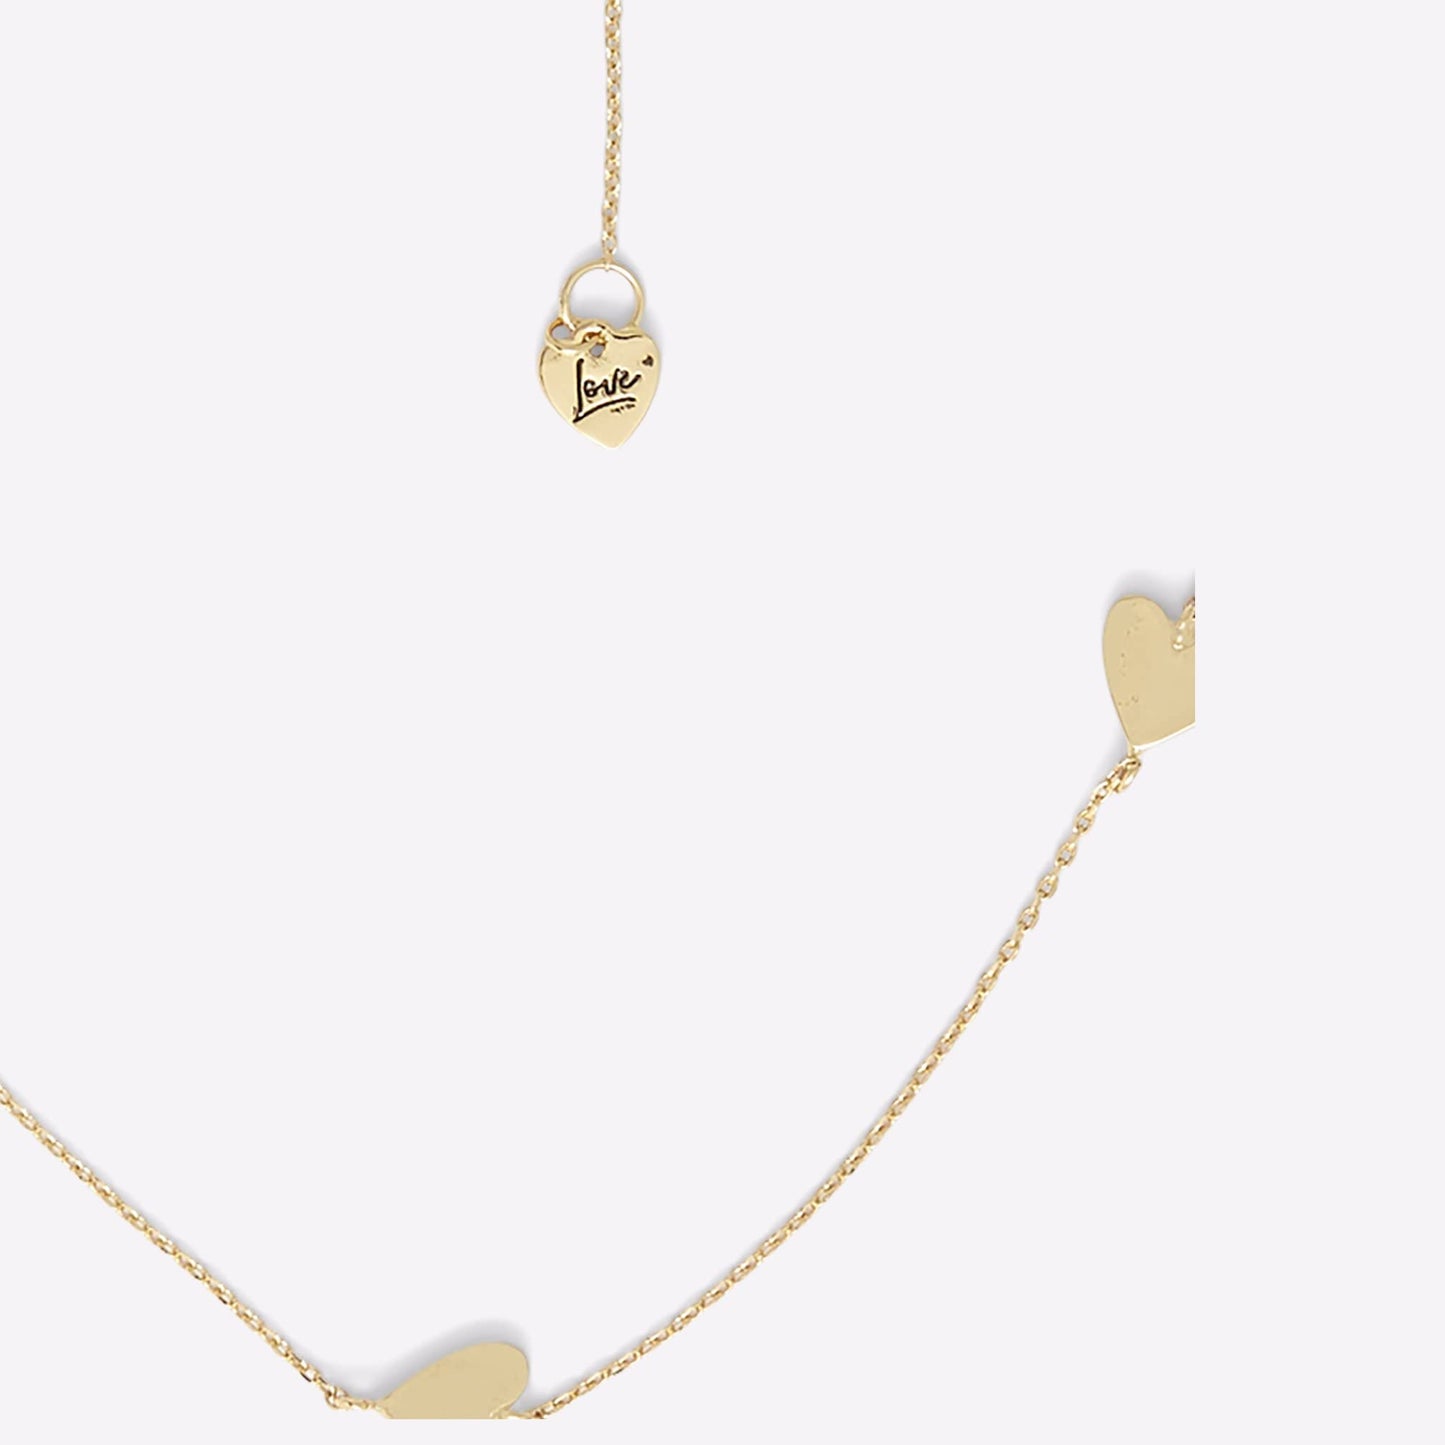 Aldo Women's Dellasella Chain Necklace, Gold